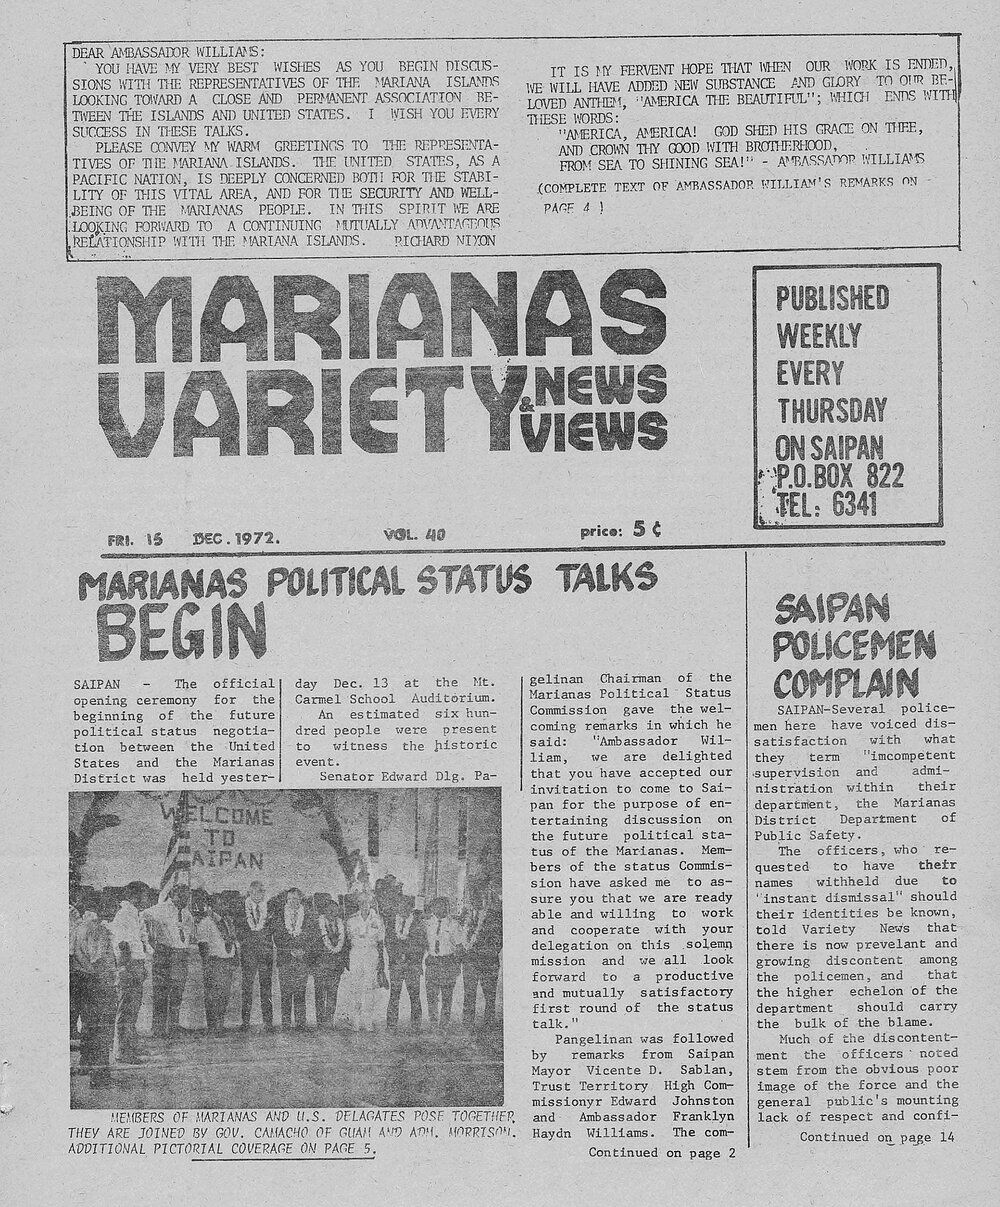 Marianas Variety_Vol. 40_Dec. 15, 1972_Pg.1